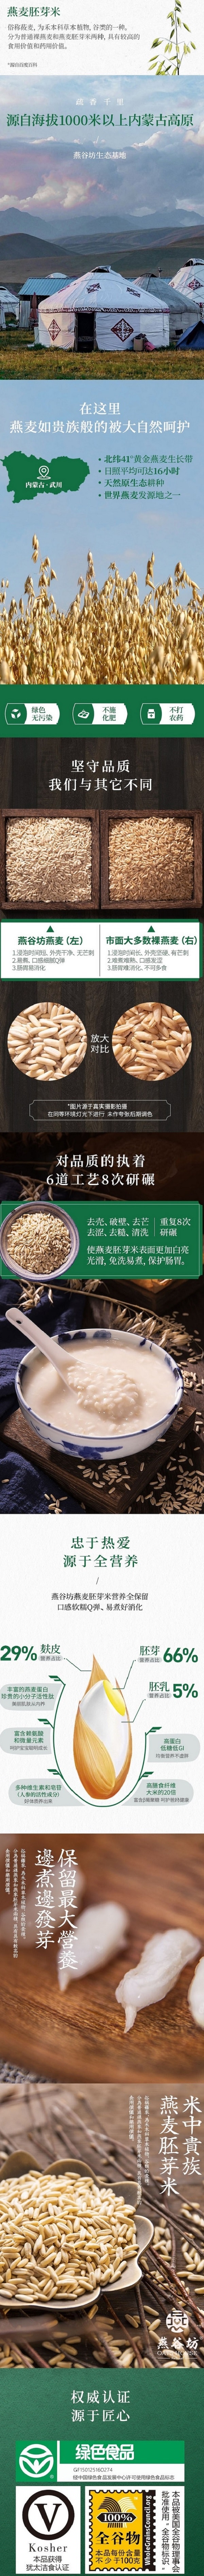 中國 燕麥穀坊OATS HOUSE 燕麥胚芽米 綠色有機 內蒙古高原全穀物裸燕麥 燕麥粥 美味雜糧飯400g 否